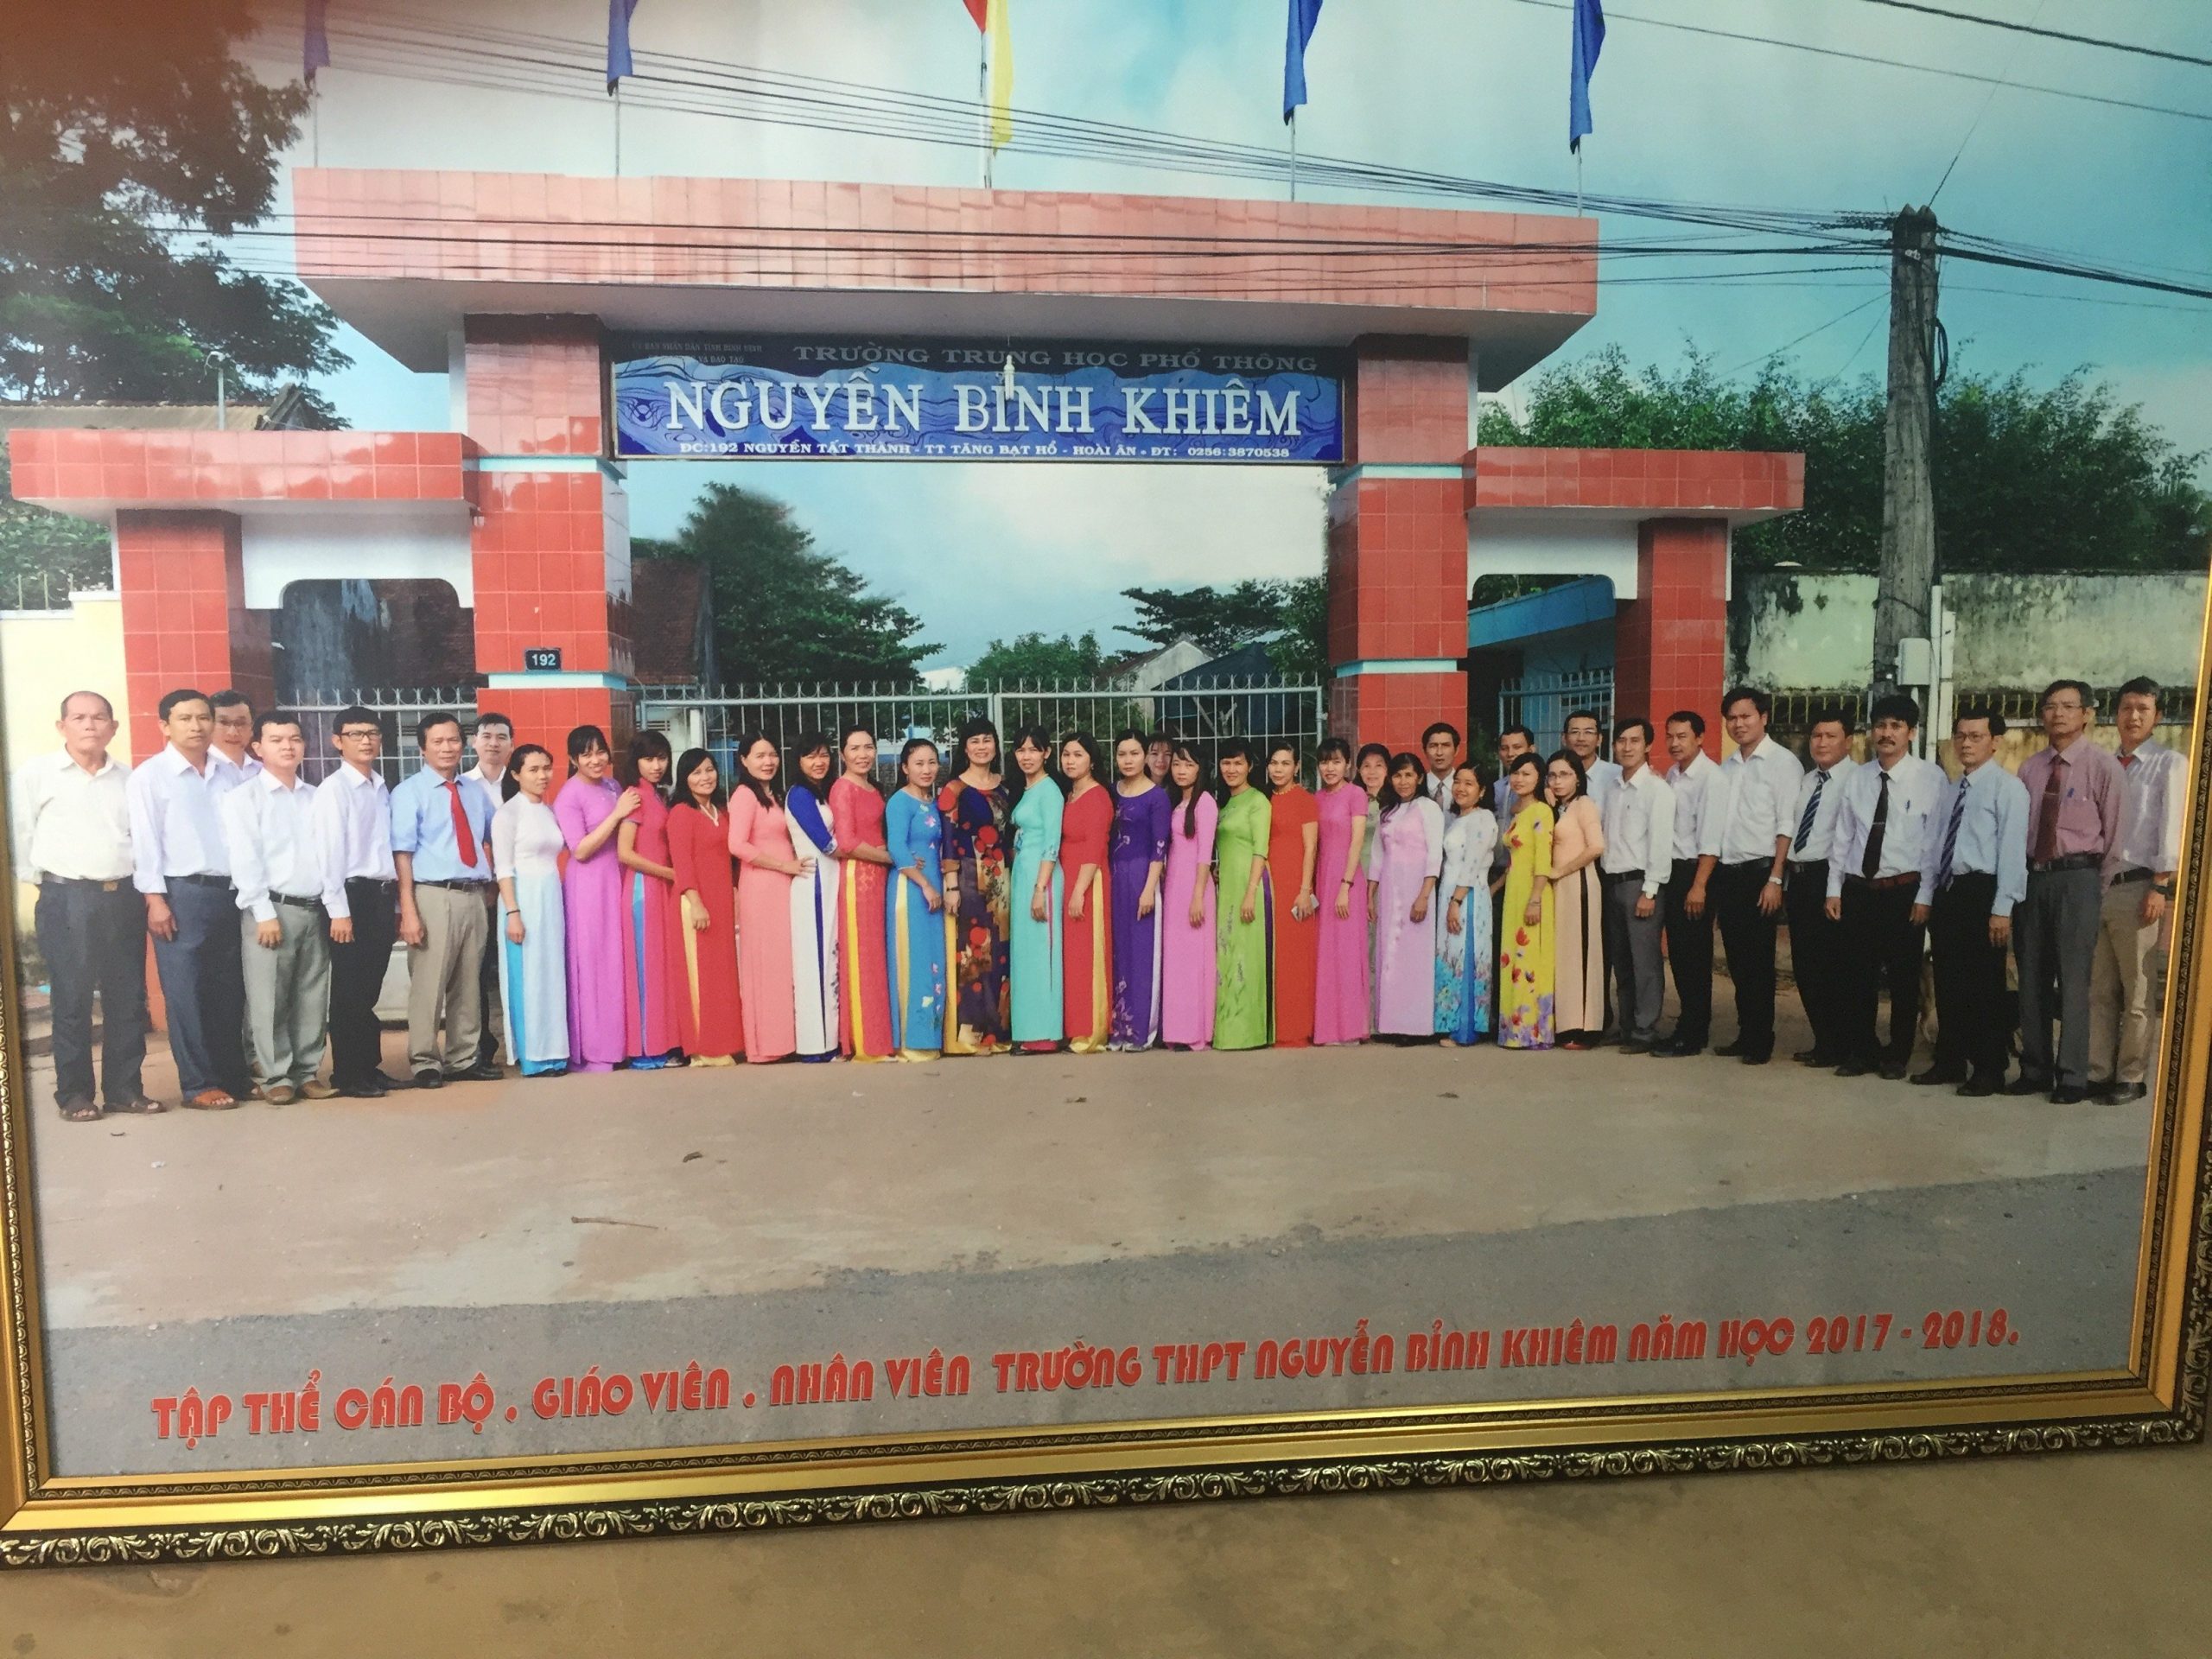 Trường THPT Nguyễn Bỉnh Khiêm – Hoài Ân – Bình Định